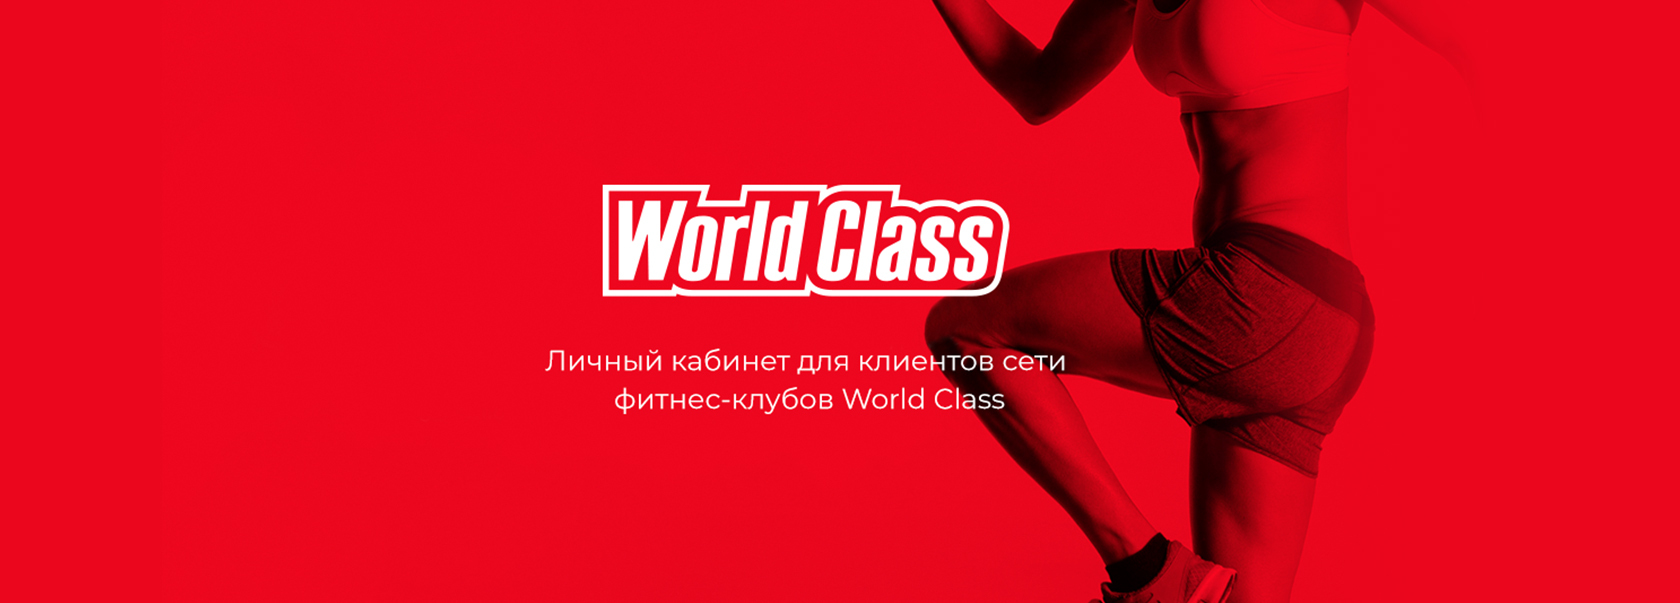 Премиальная сеть фитнес-клубов World Class стремится предоставлять своим кл...